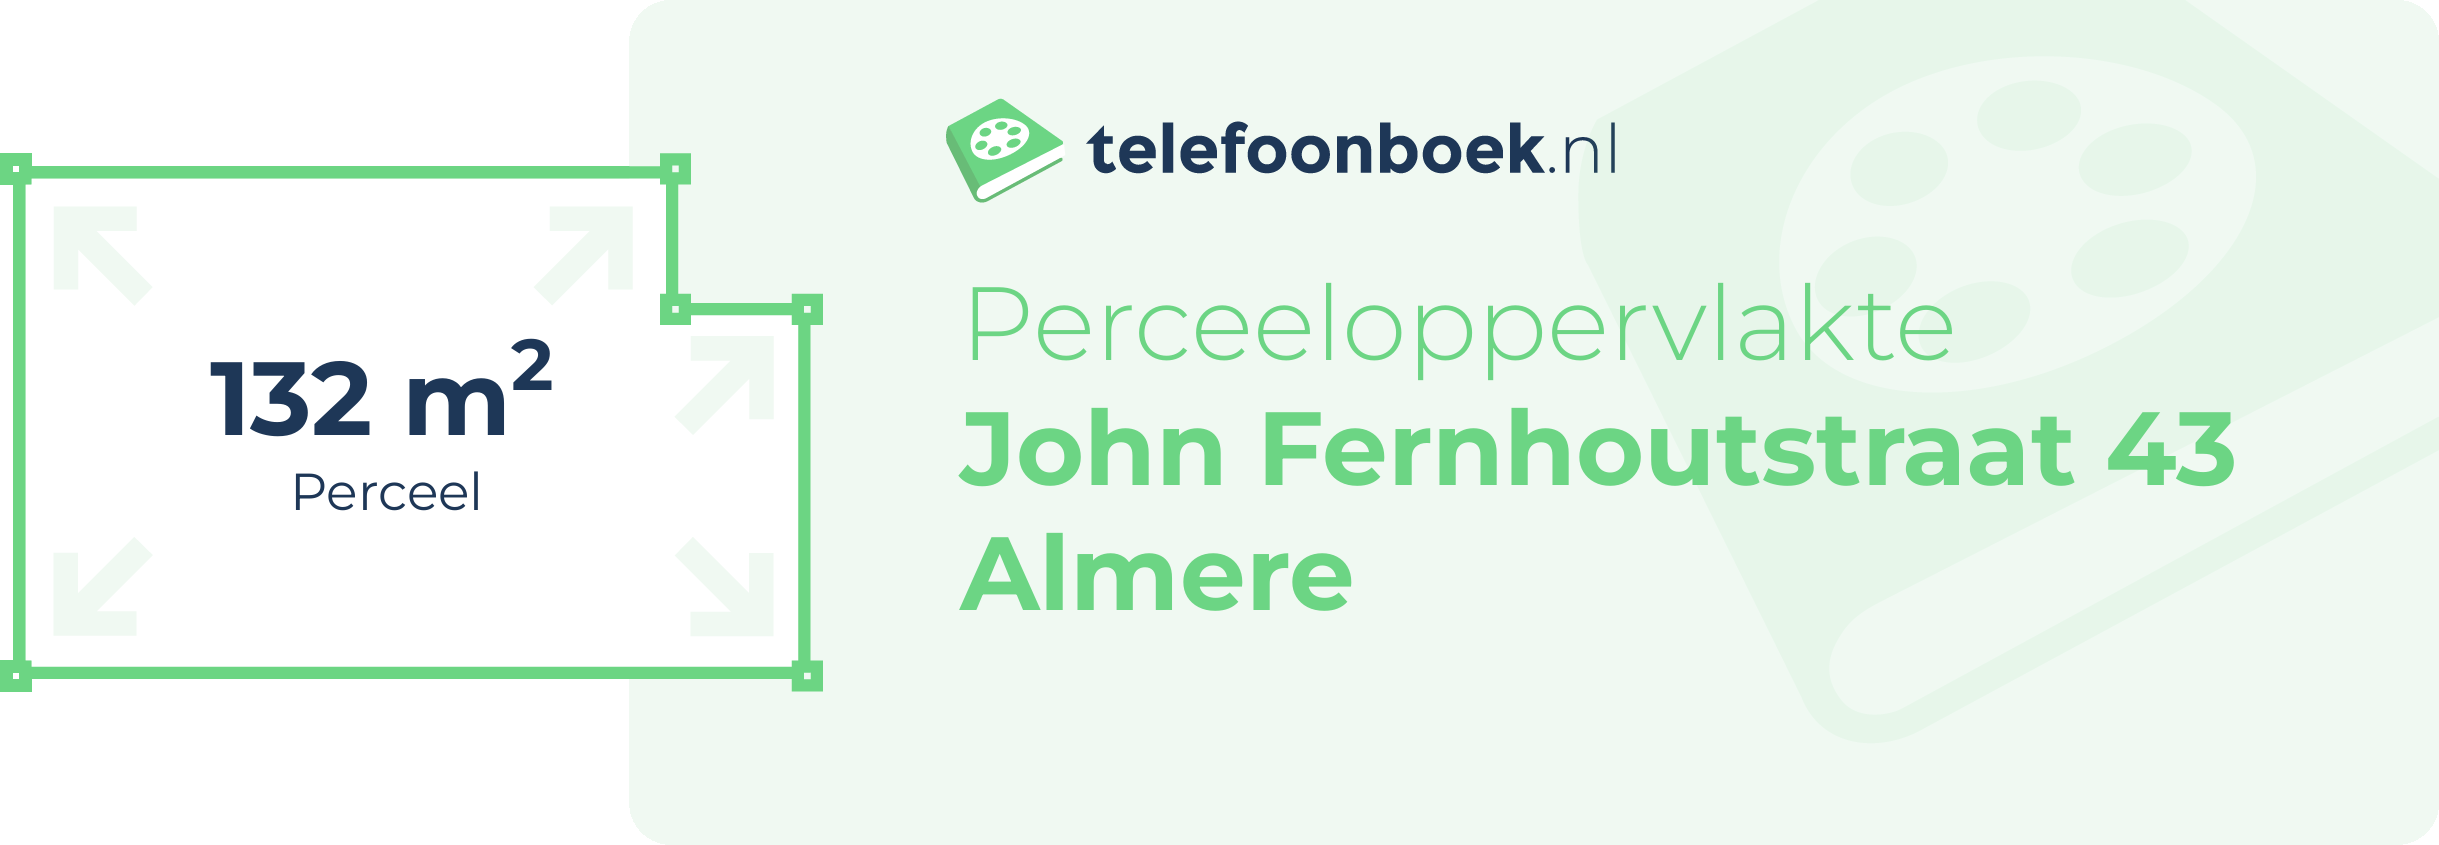 Perceeloppervlakte John Fernhoutstraat 43 Almere